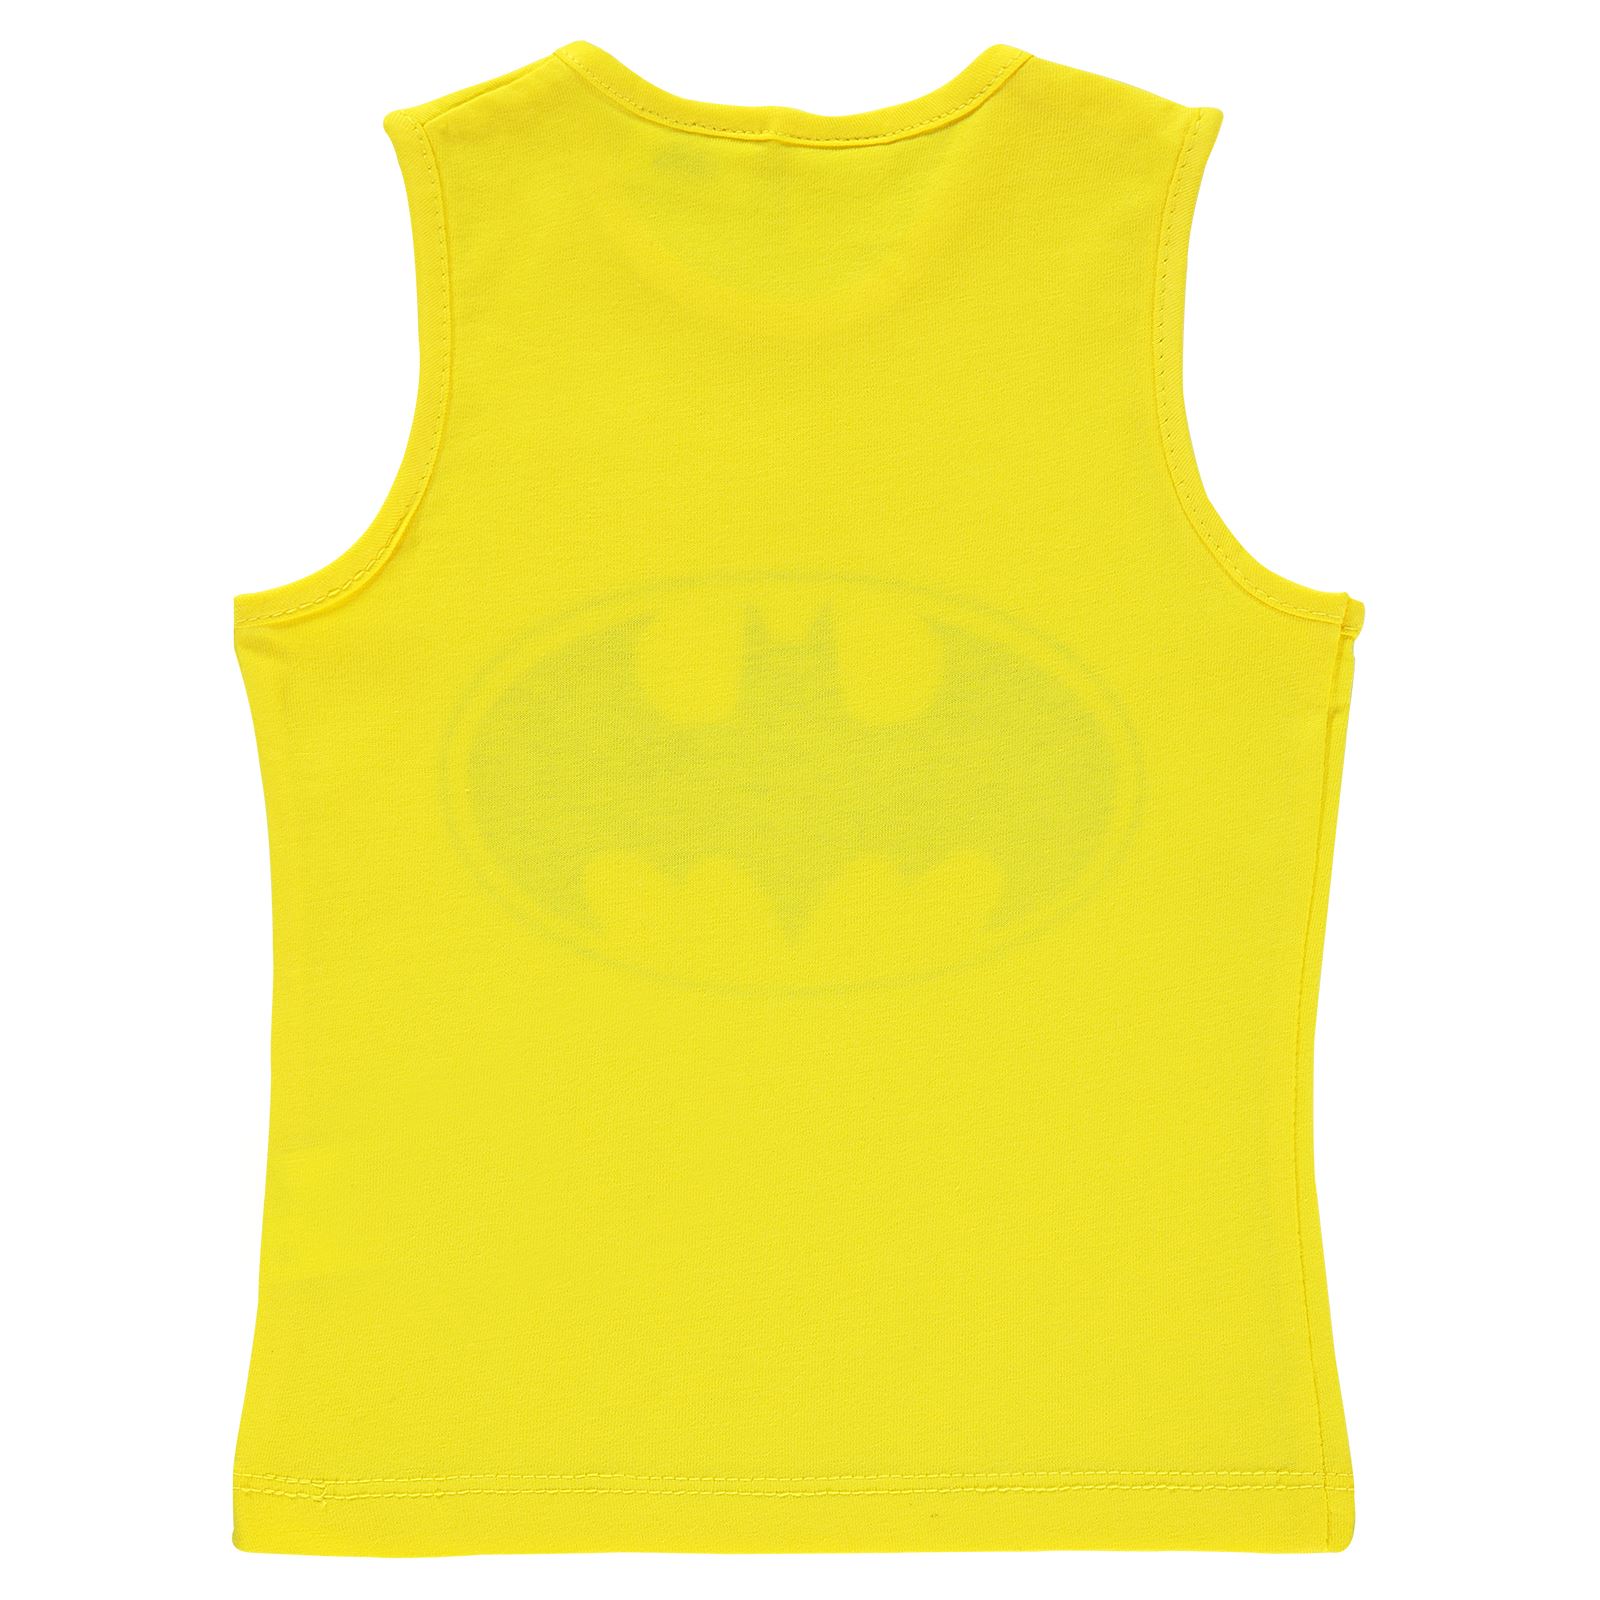 Batman Erkek Bebek Tişört 6-18 Ay Sarı